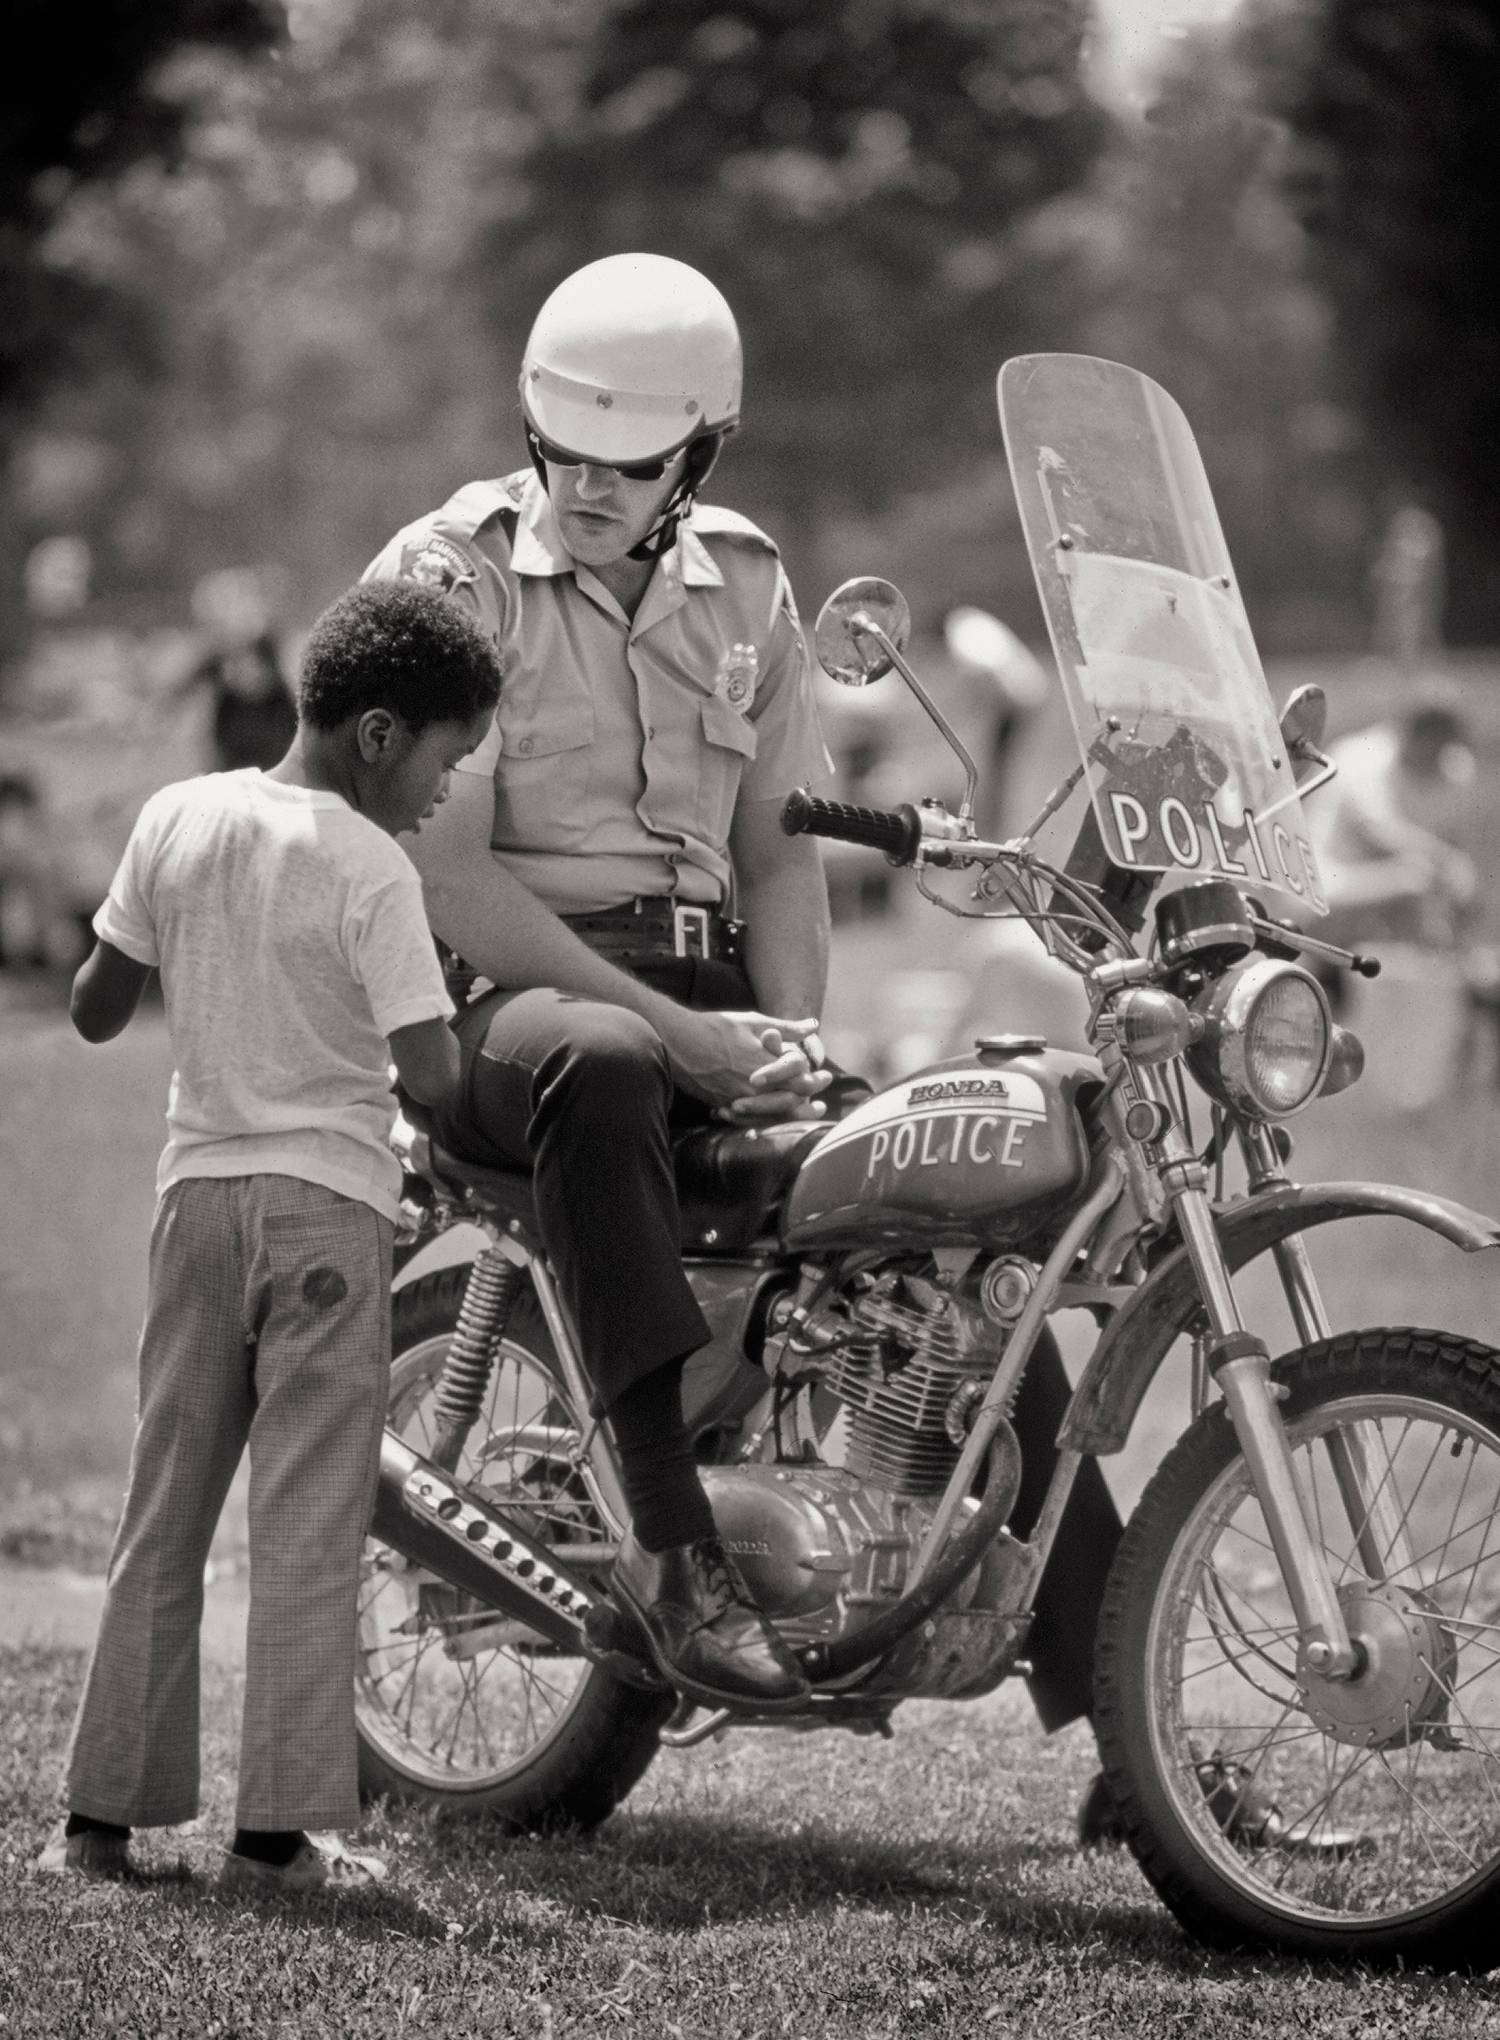 Boy With Cop, Hartford, CT, 1969